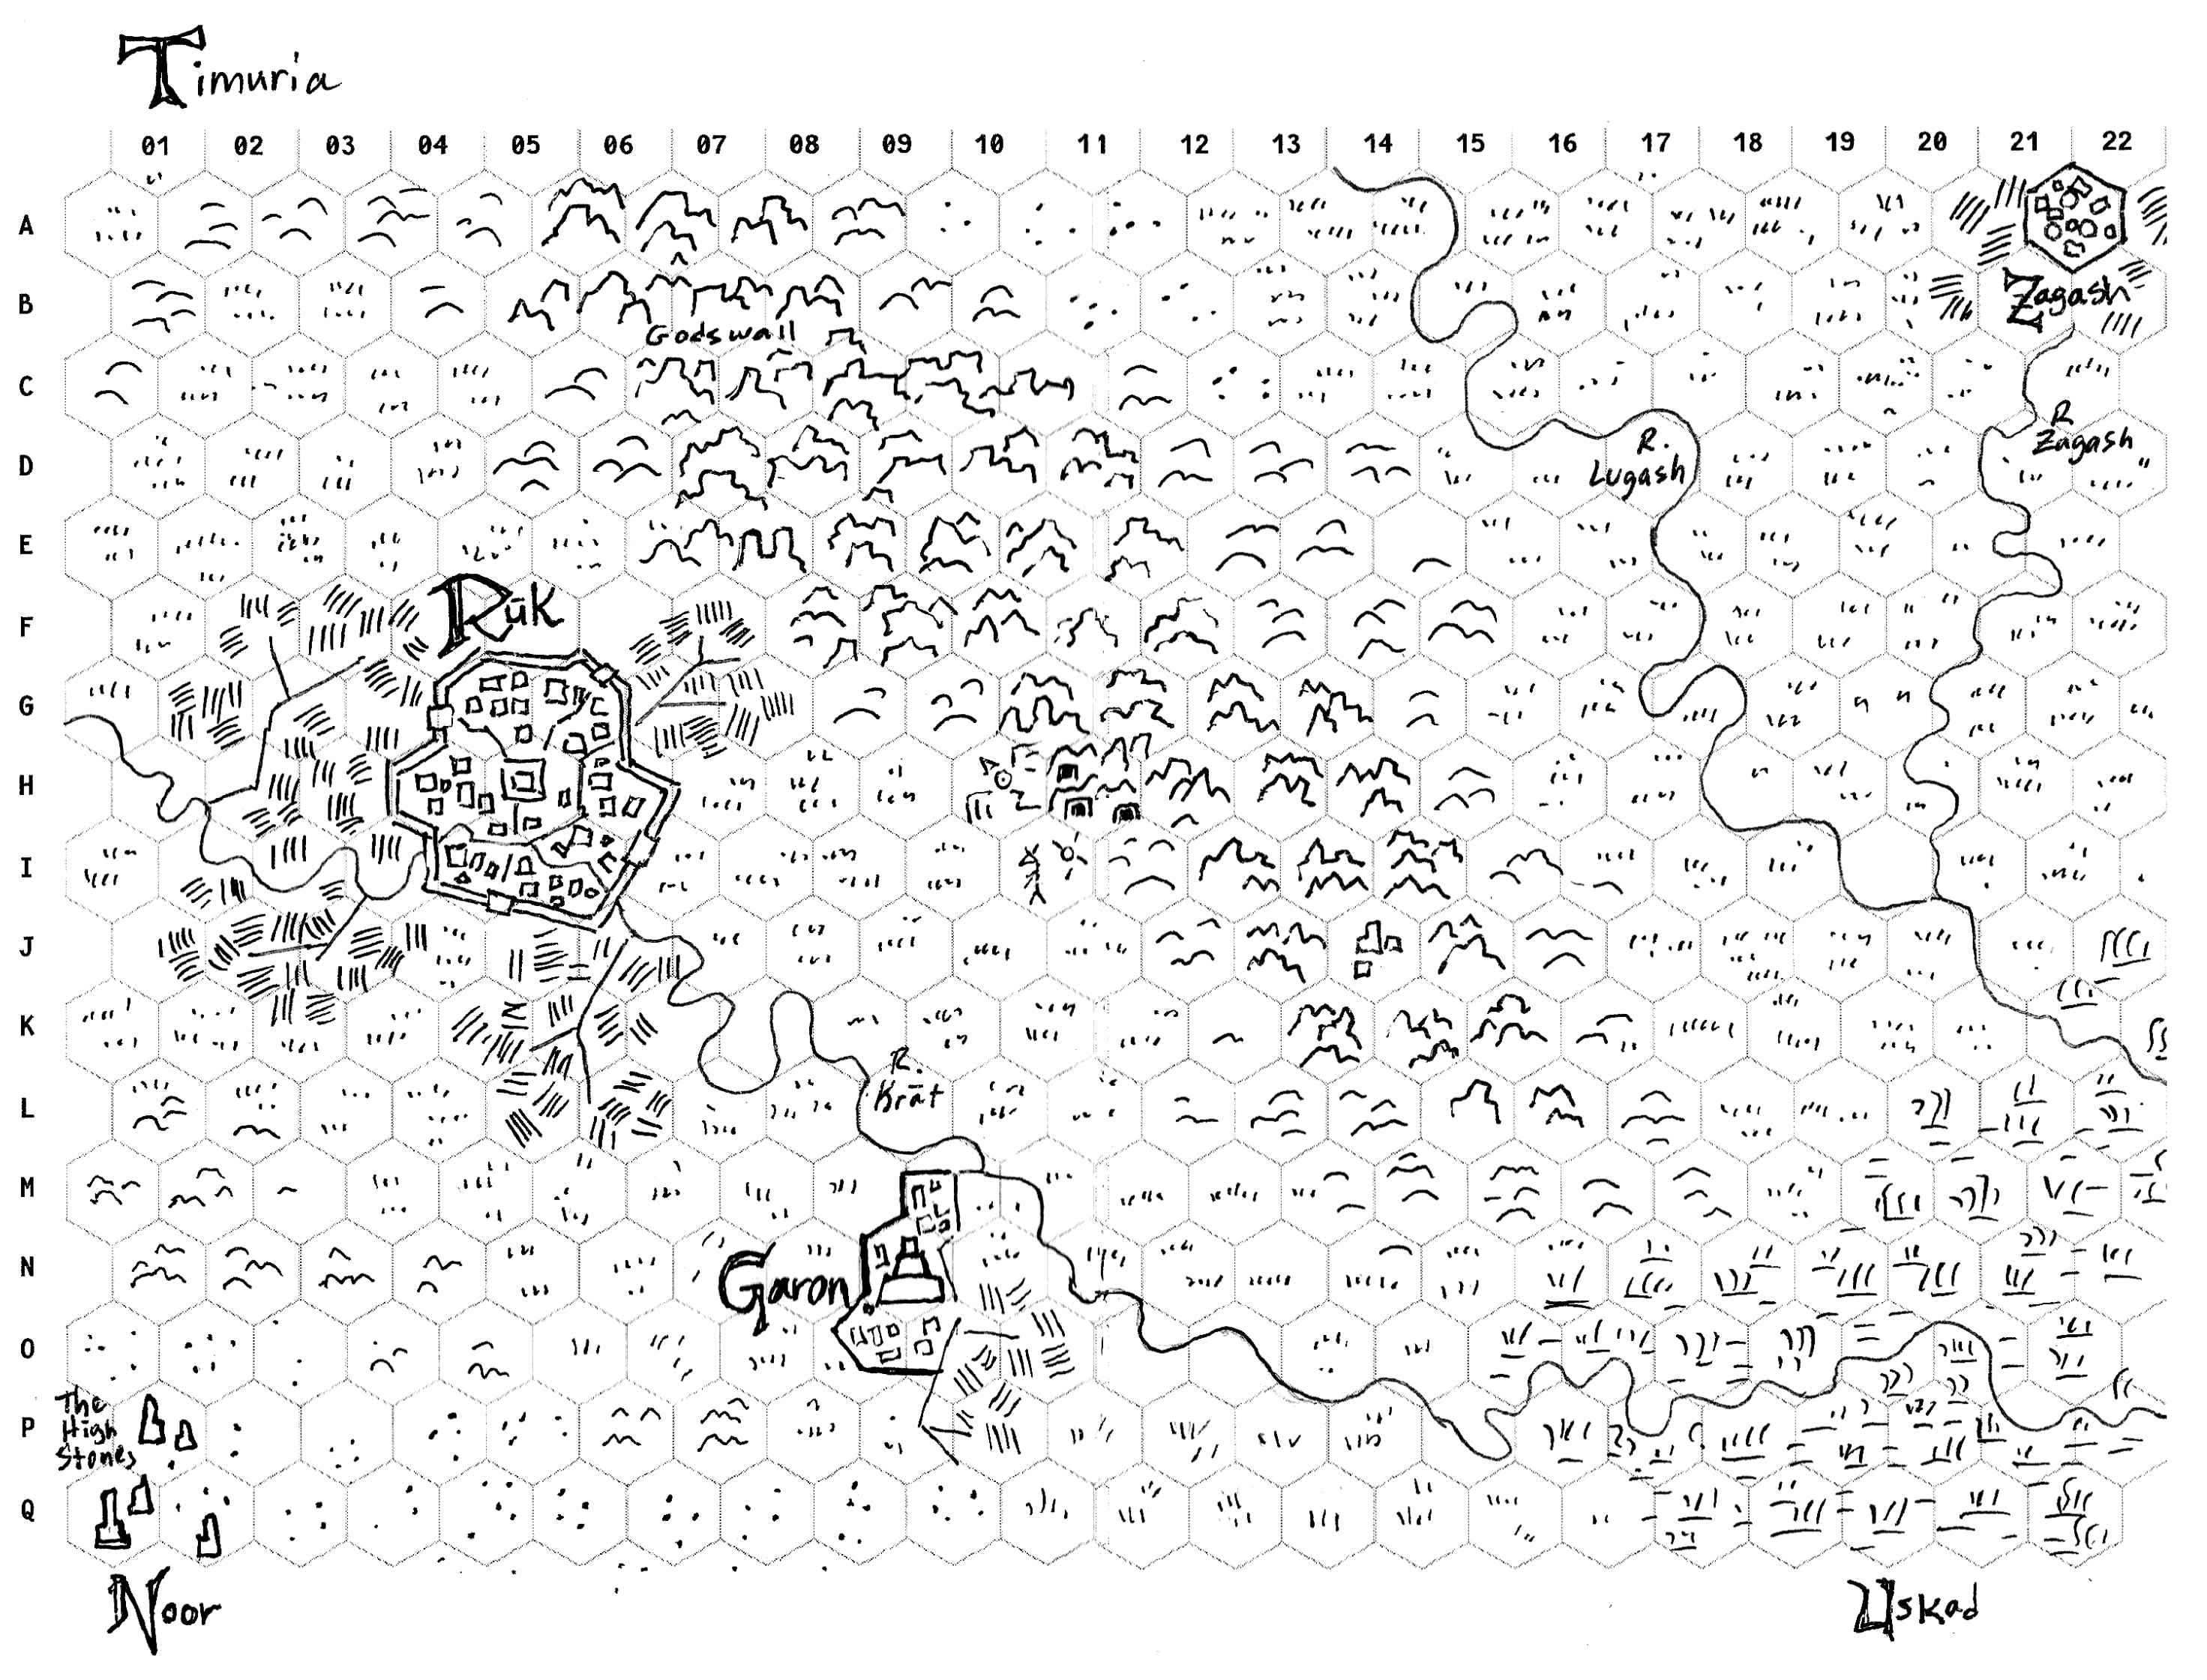 Timura Hex Map